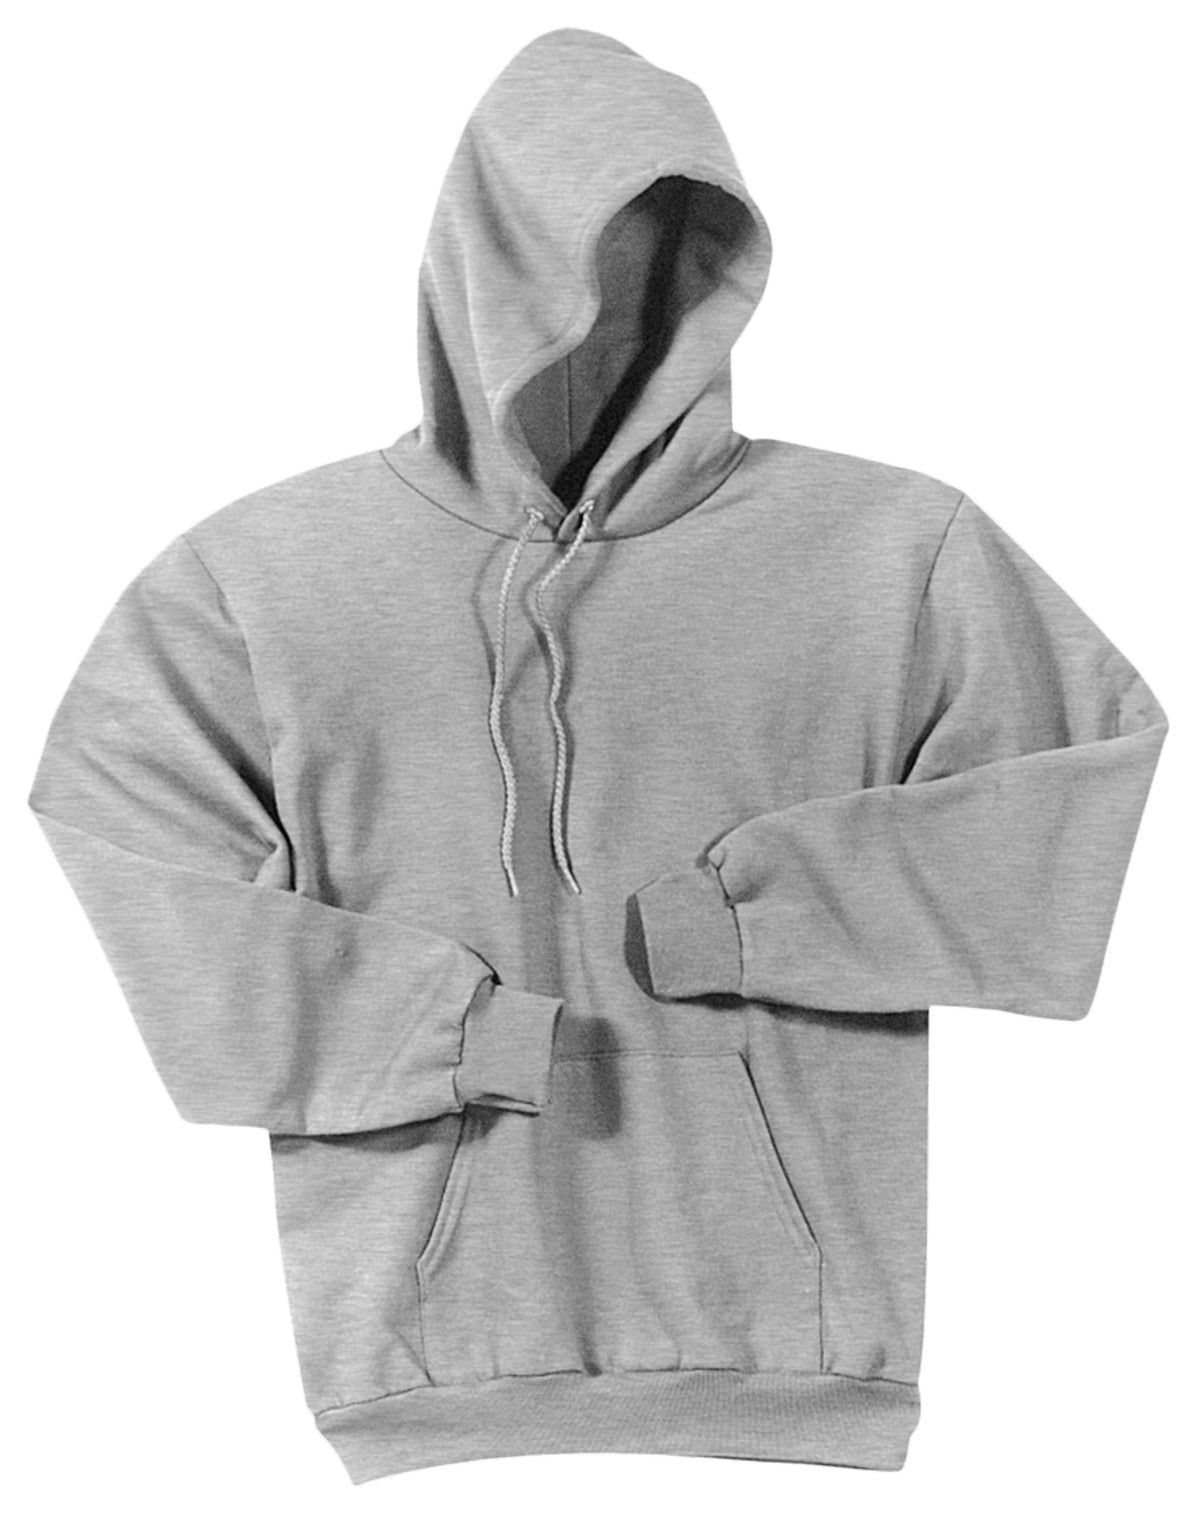 Basic Hooded Sweatshirt